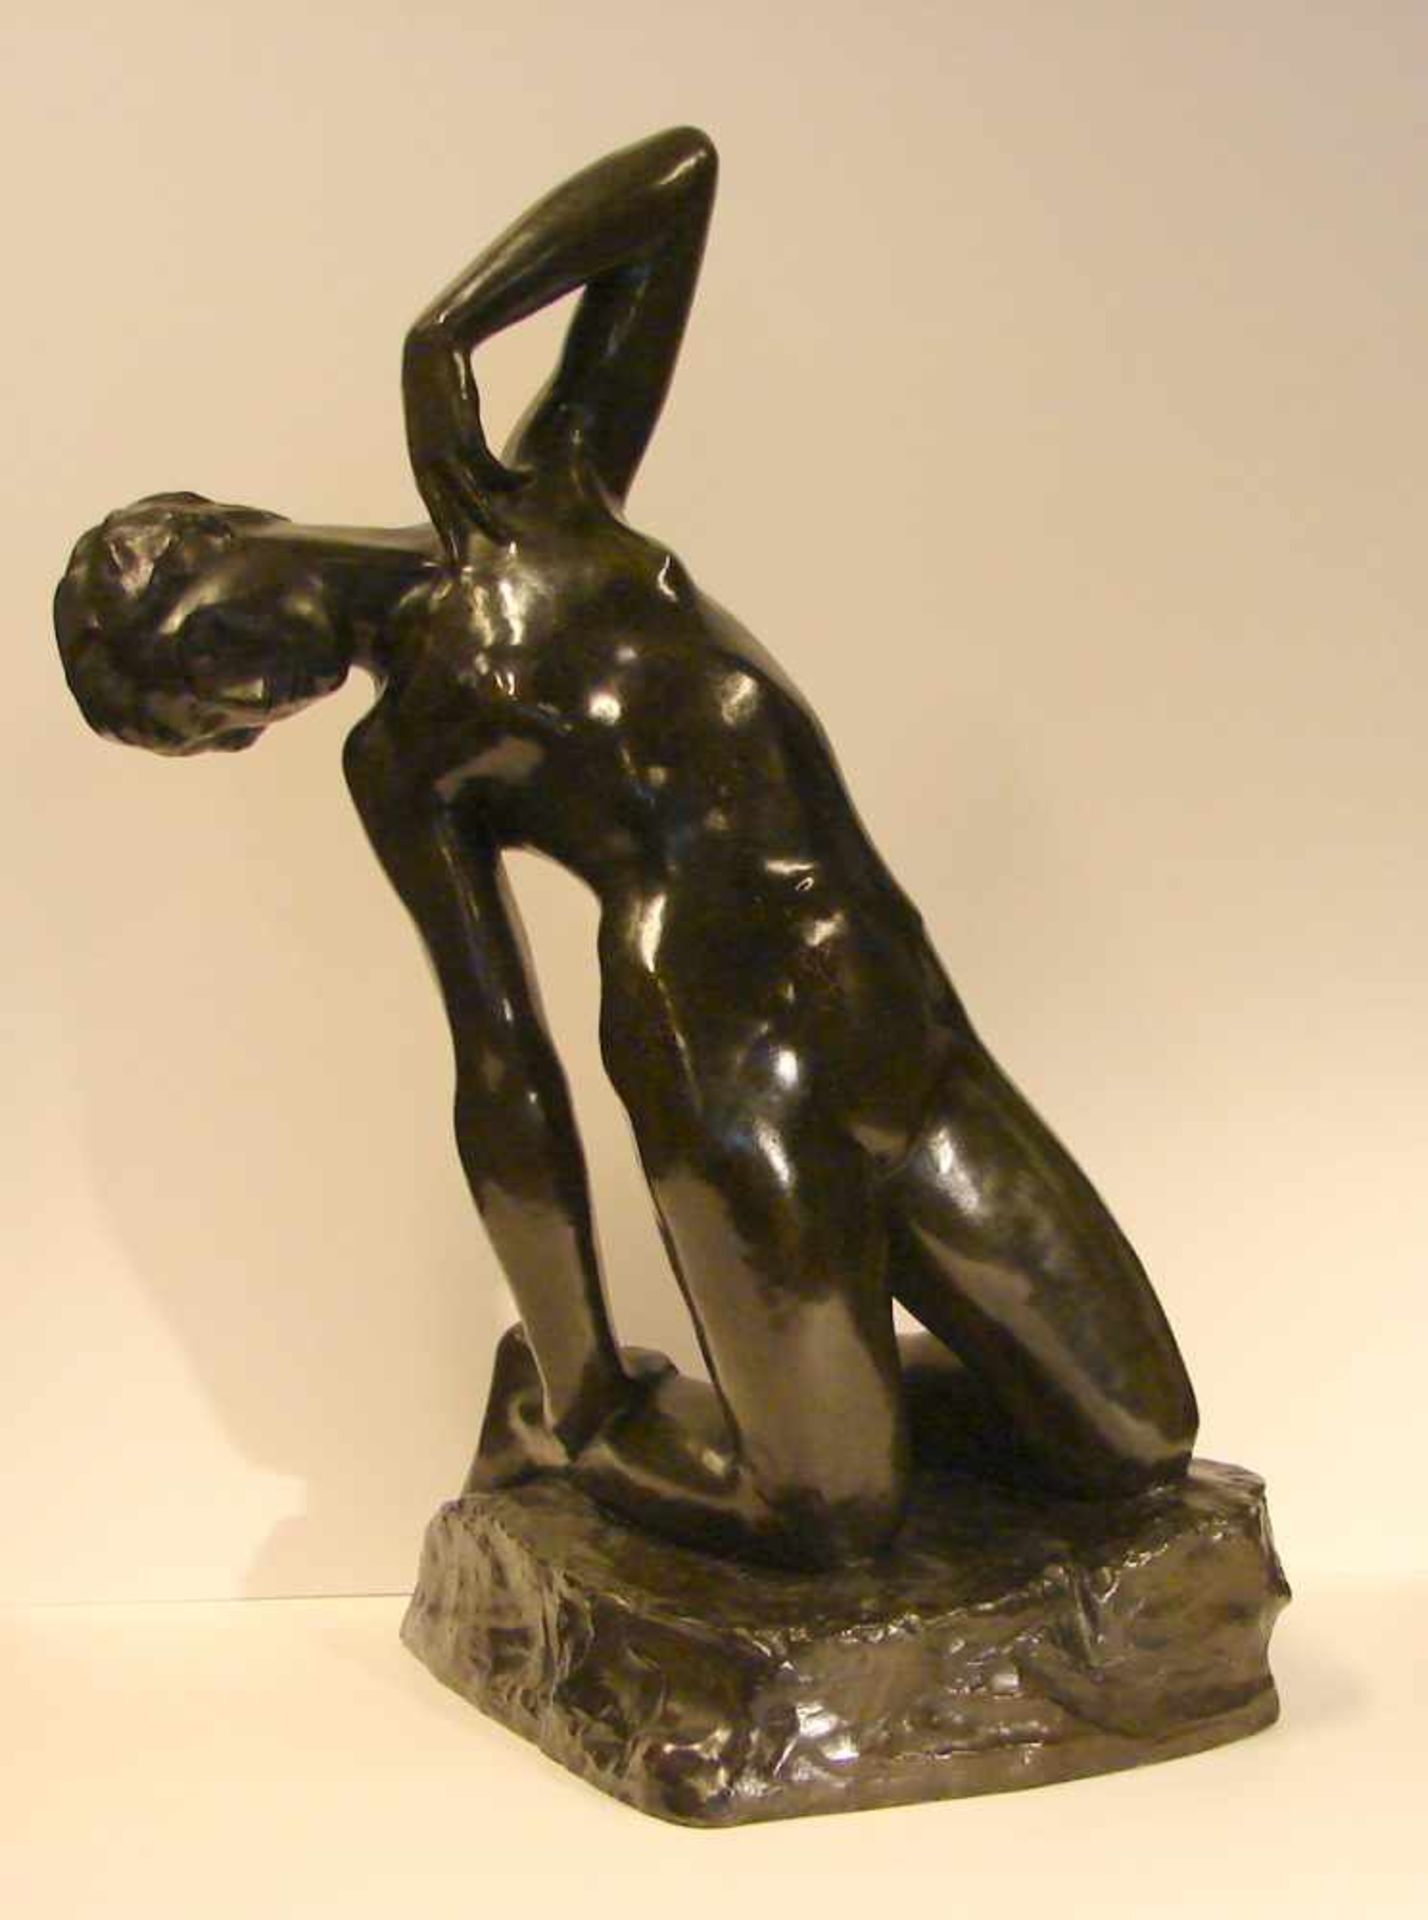 GEORGE MINNE (1866-1941, Belgien), "Die Knieende", Bronze, signiert, dat. 1931, H. ca. 60 cm